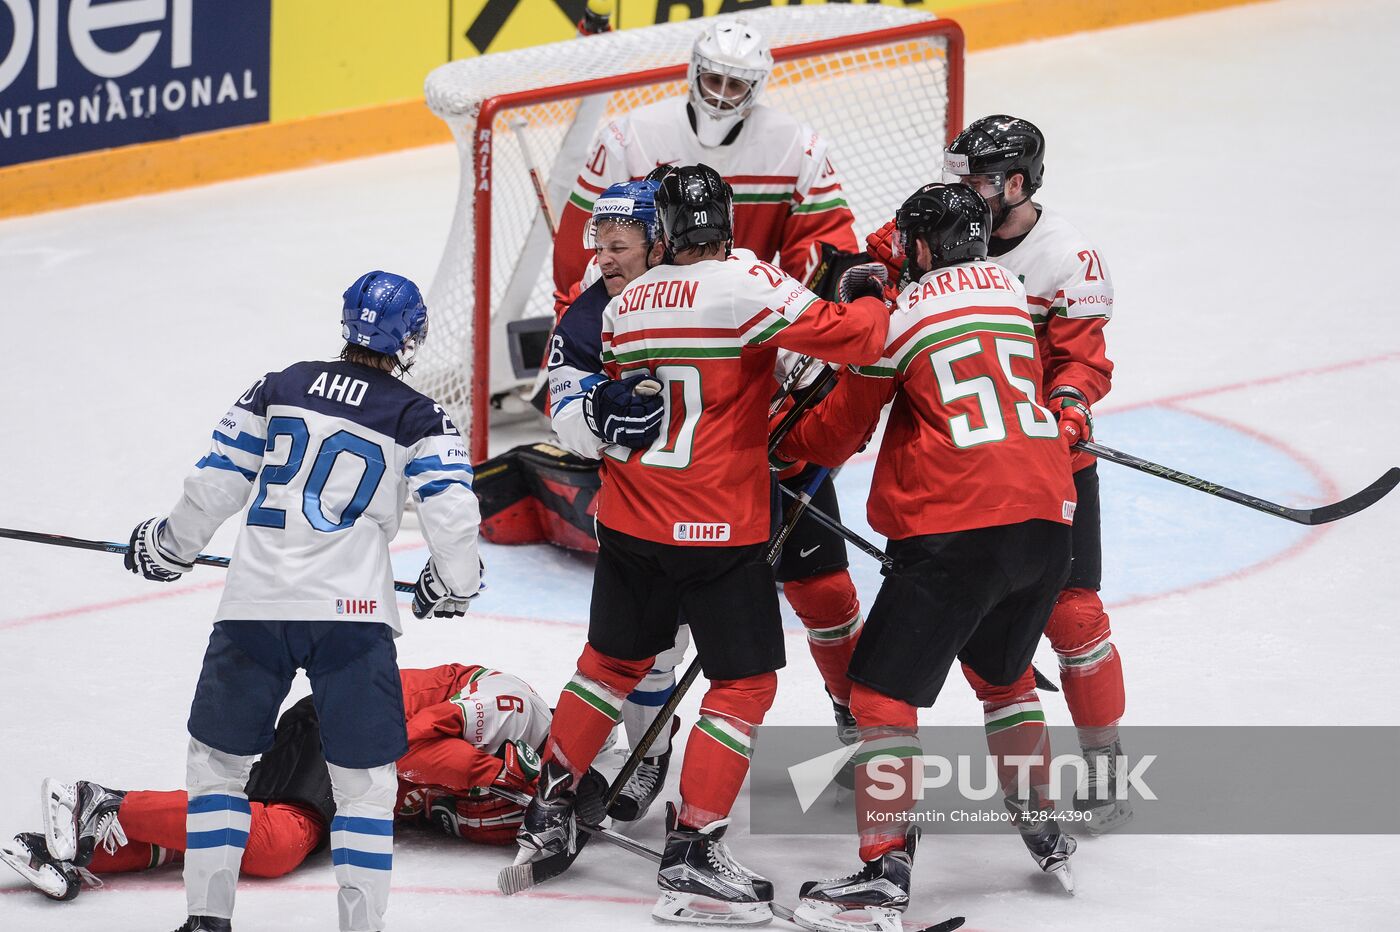 2016 IIHF World Ice Hockey Championship. Finland vs. Hungary